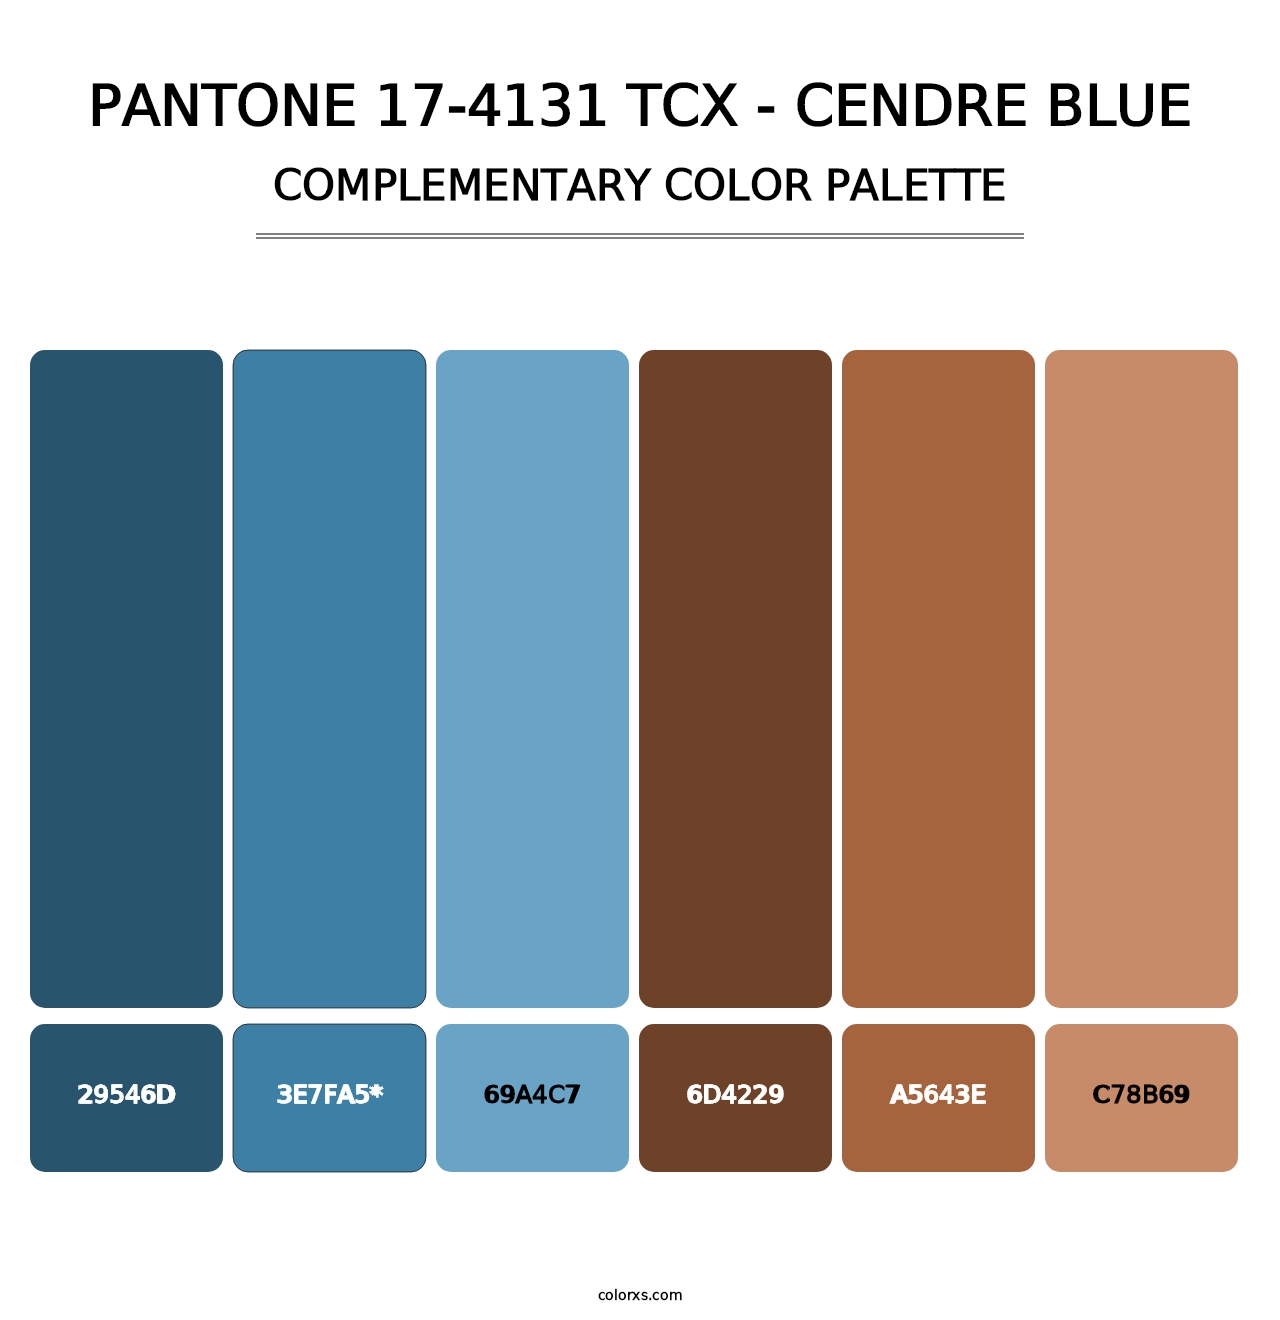 PANTONE 17-4131 TCX - Cendre Blue - Complementary Color Palette